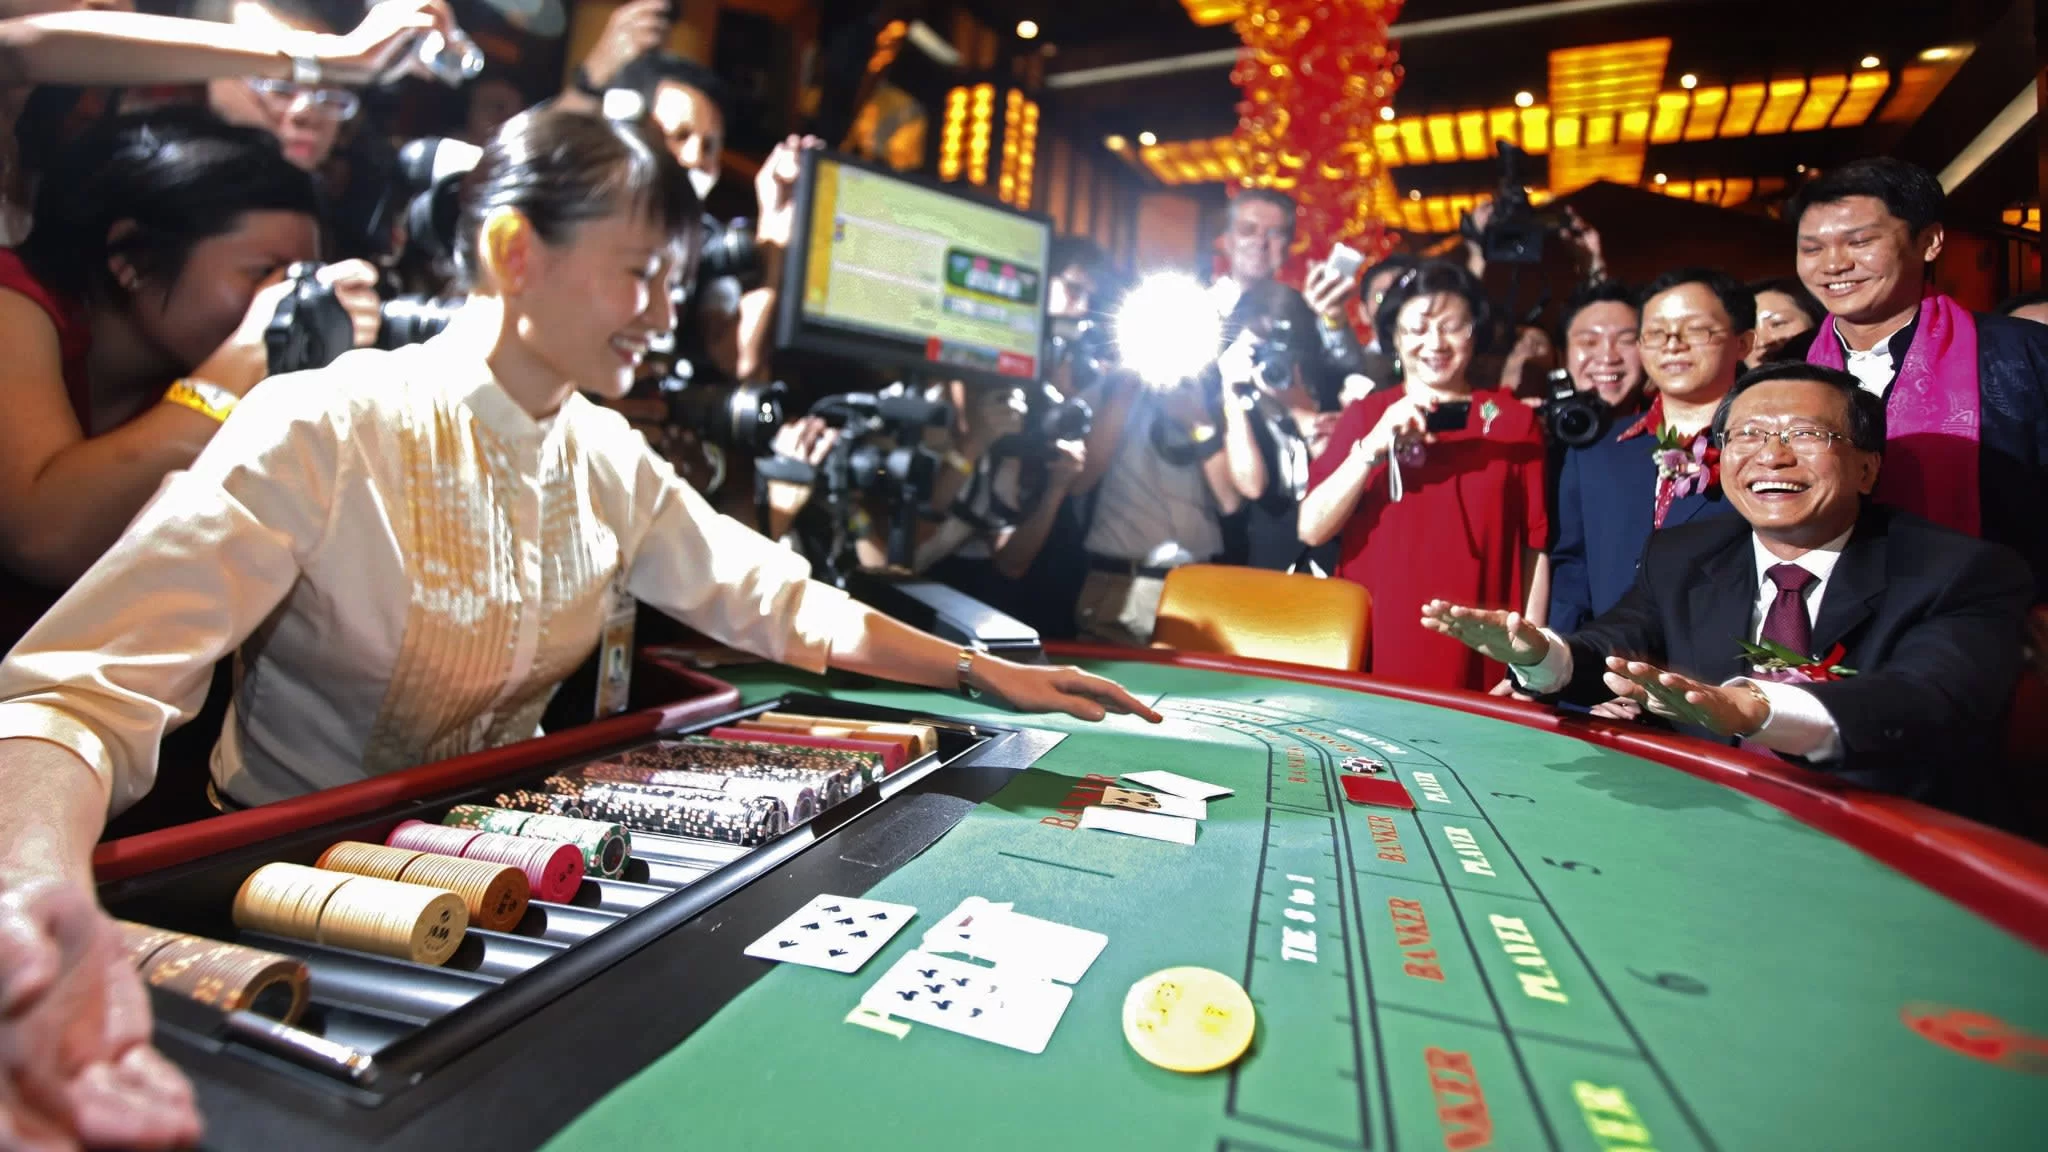 Сыграть в азартную игру. Казино в Сингапуре. Вьетнам казино. Игорный бизнес. Китай азартные игры.